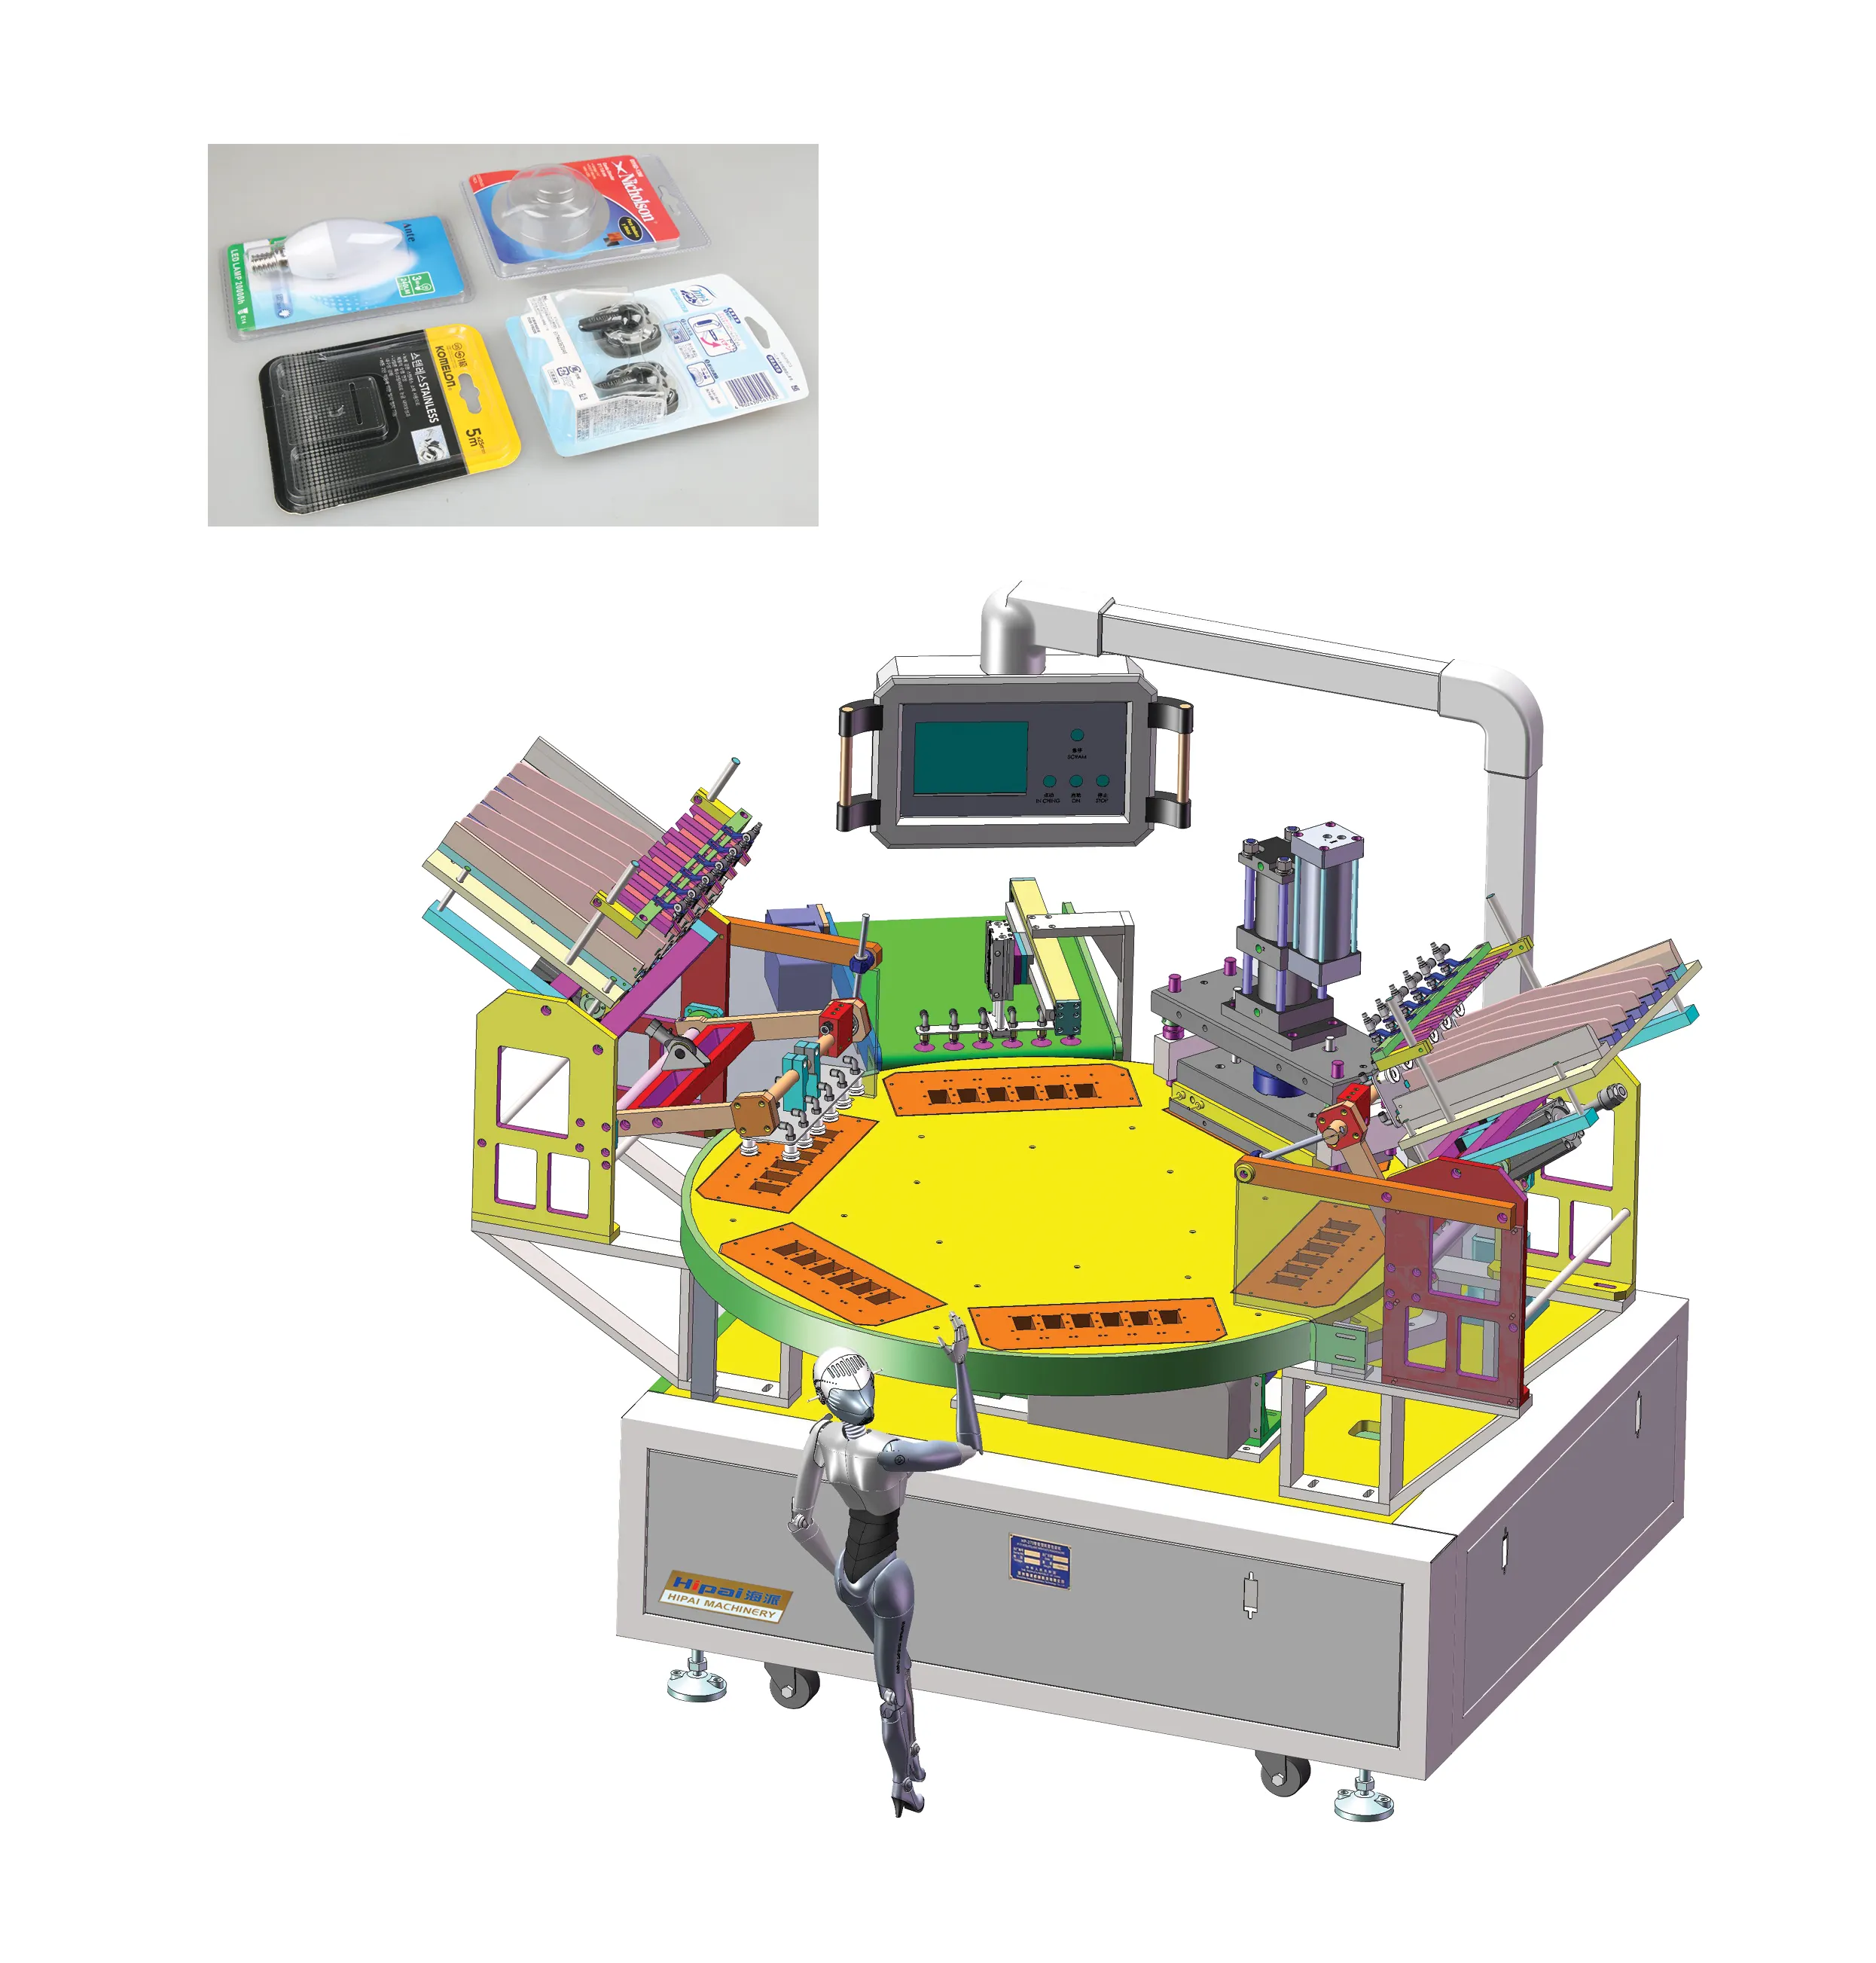 Yüksek frekanslı blister kart yapıştırma makinesi otomatik blister ambalaj paketleme makinesi